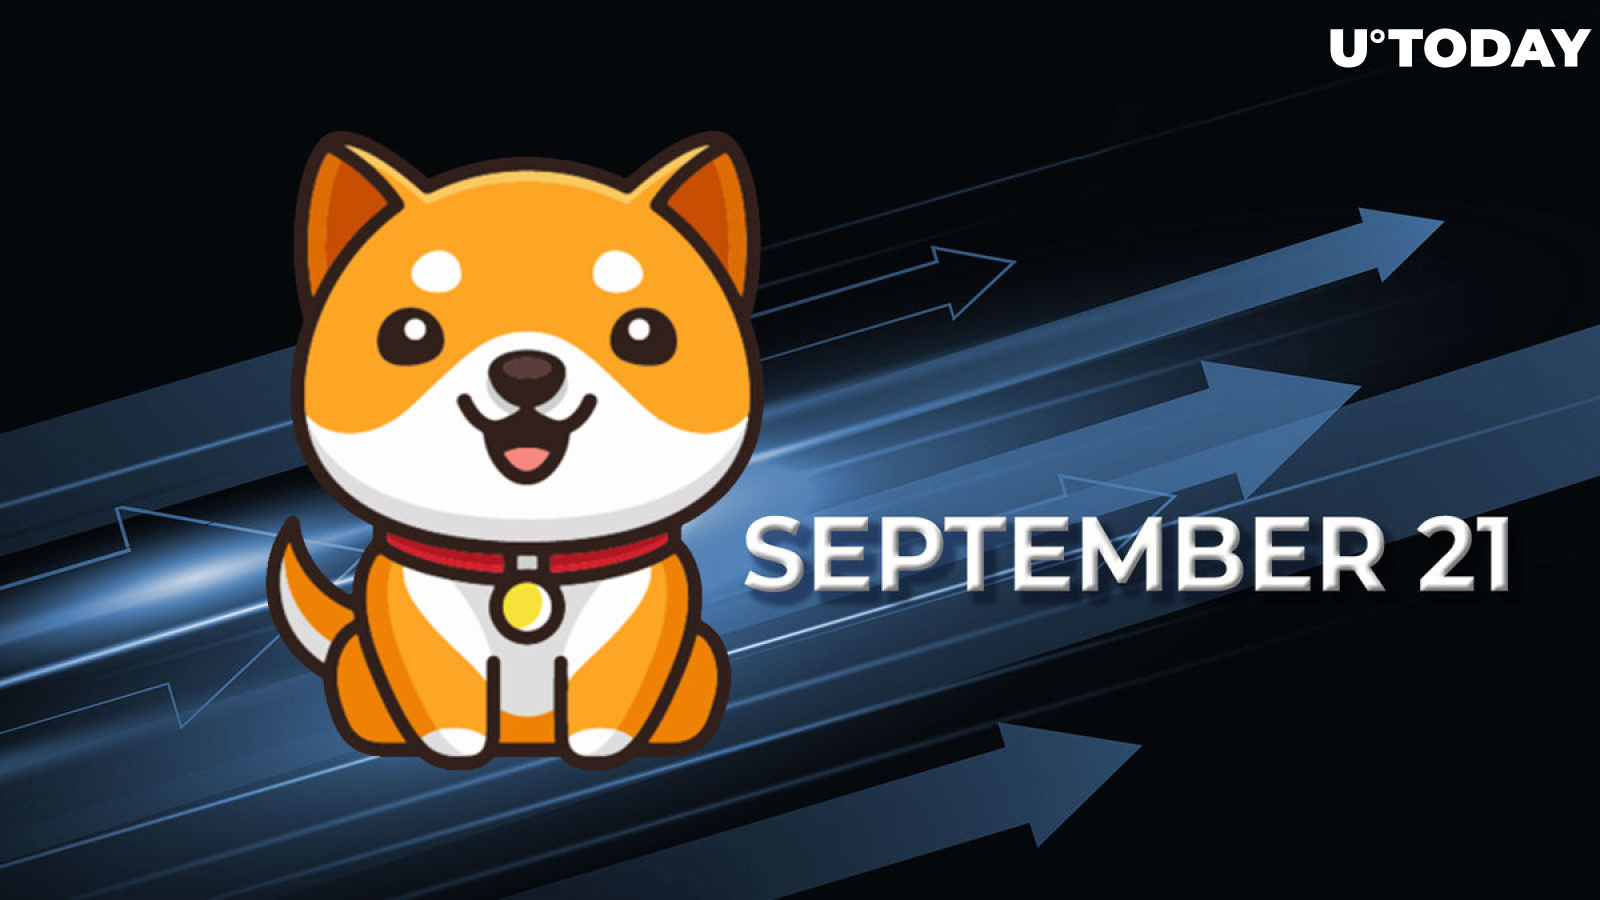 BabyDoge Team to Name Mainnet Launch on September 21